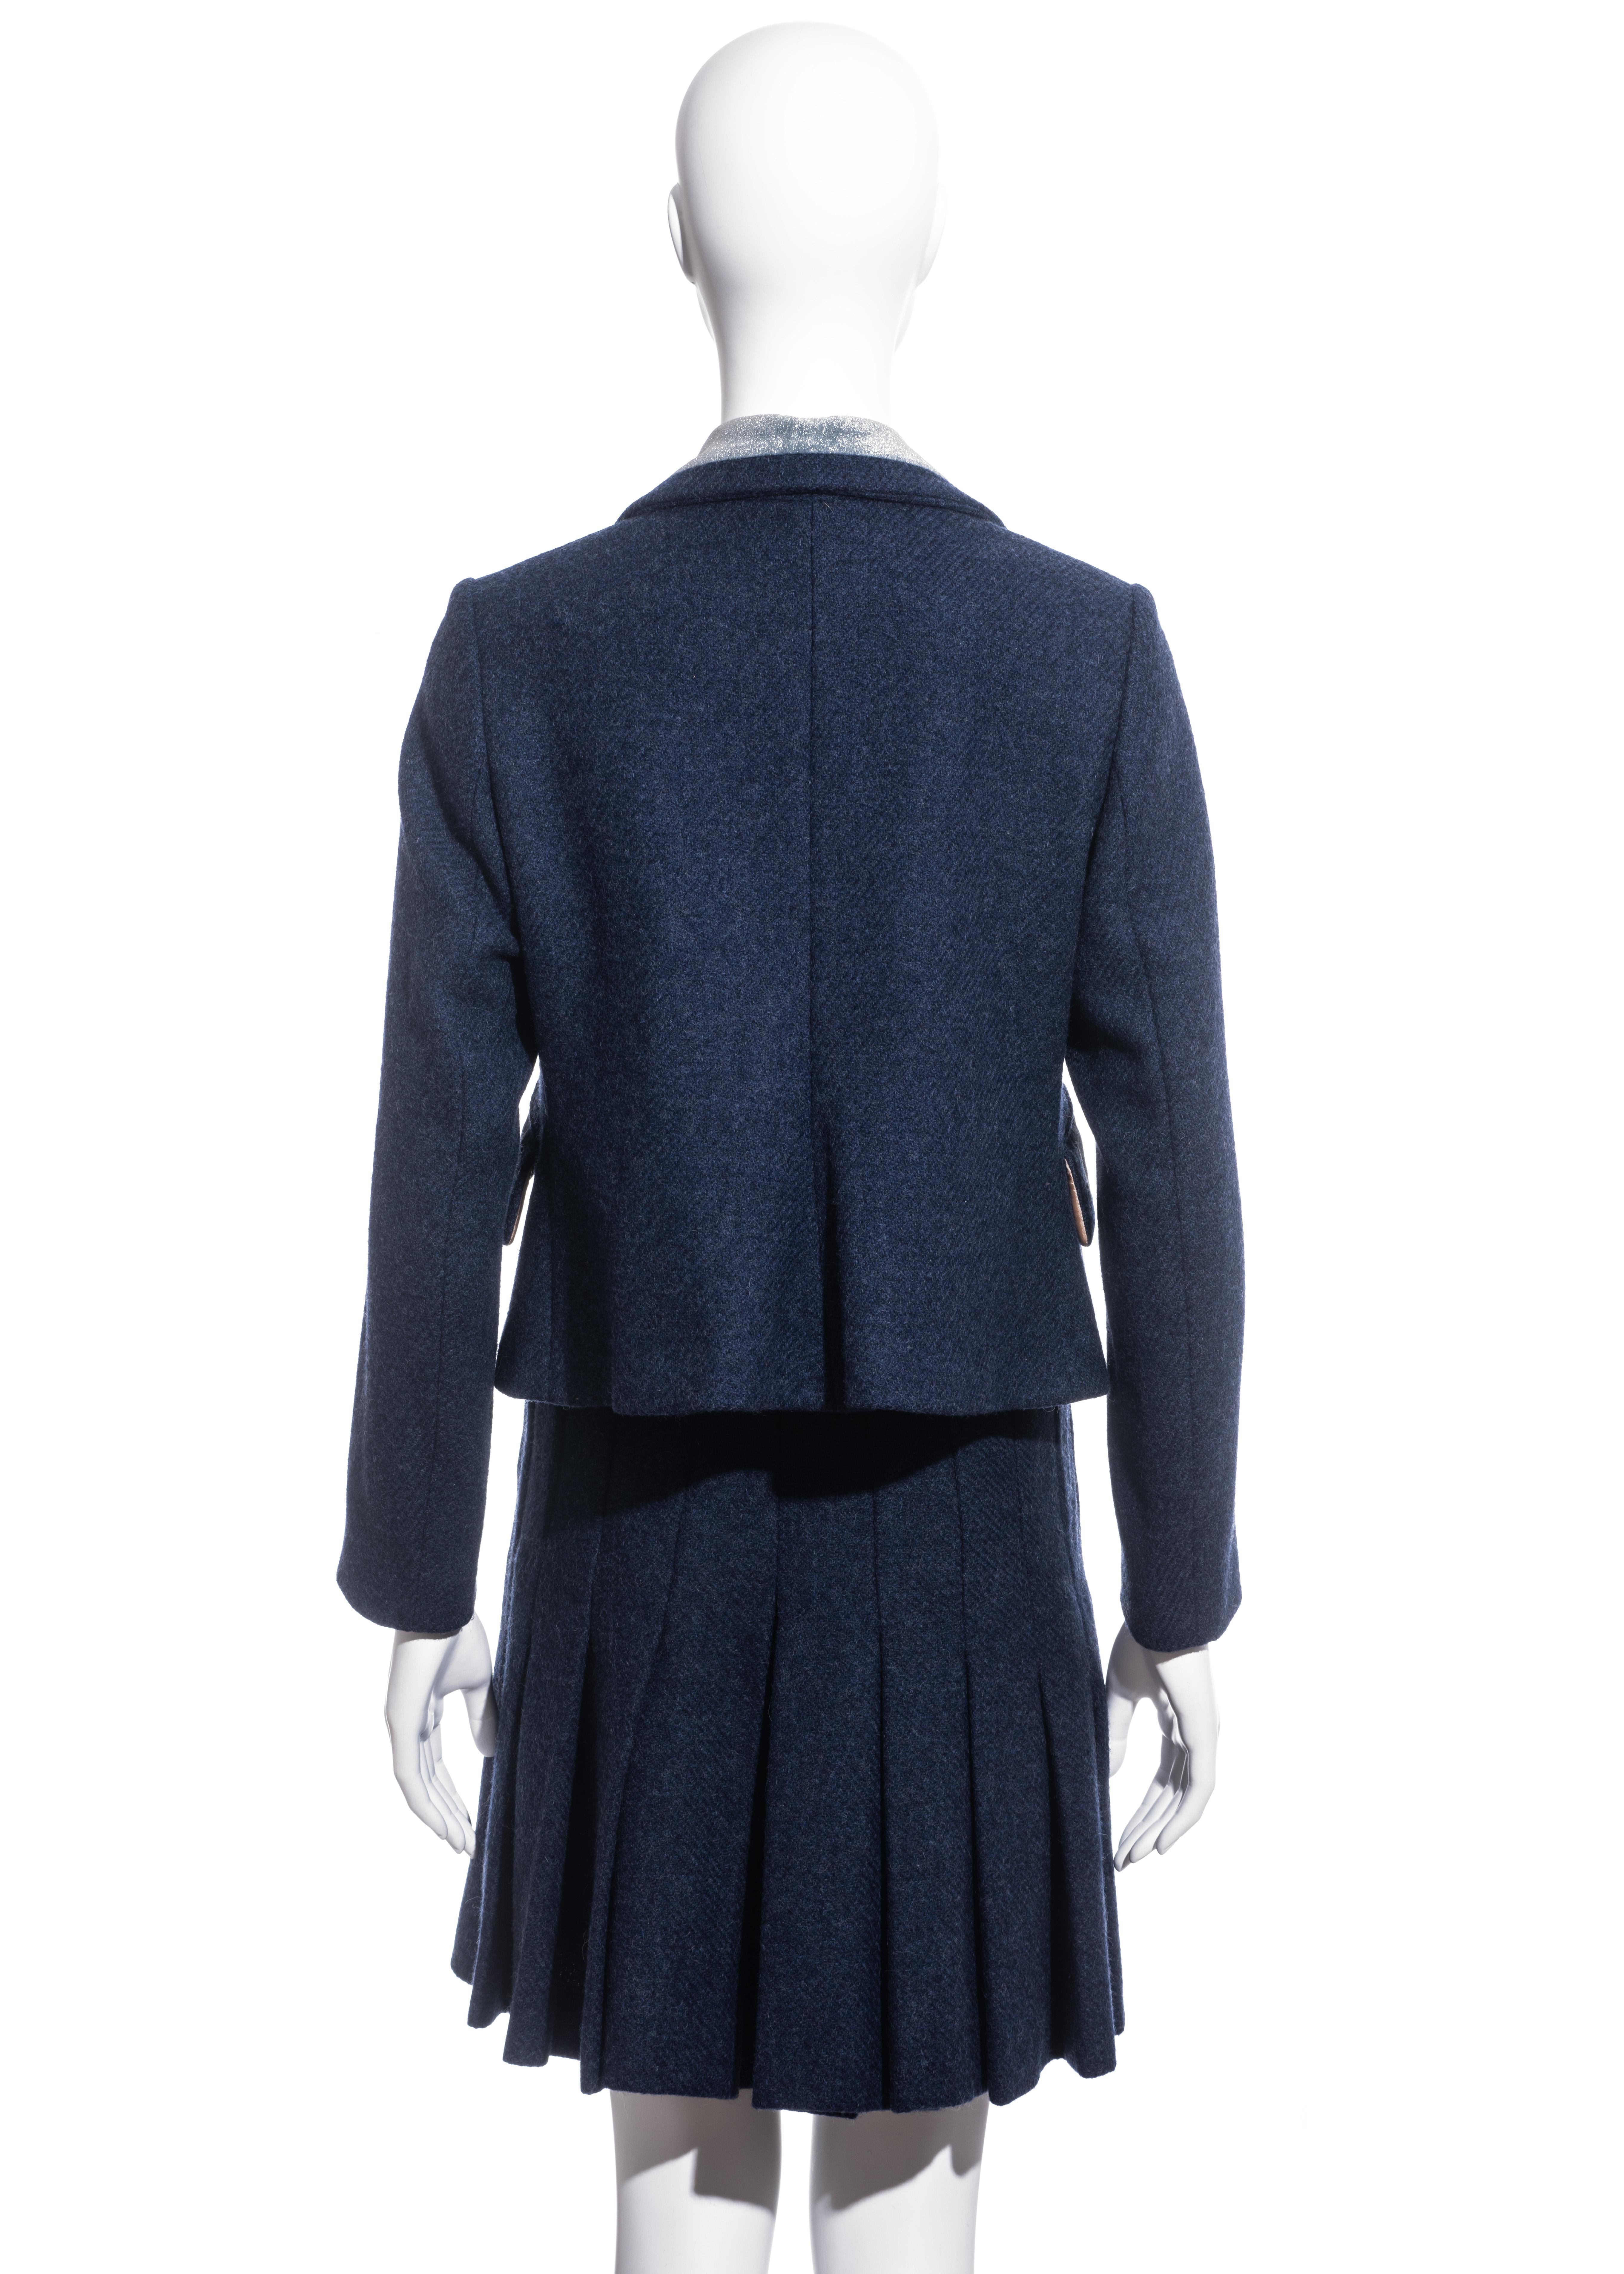 Vivienne Westwood blue tweed skirt suit, fw 1994 For Sale 4